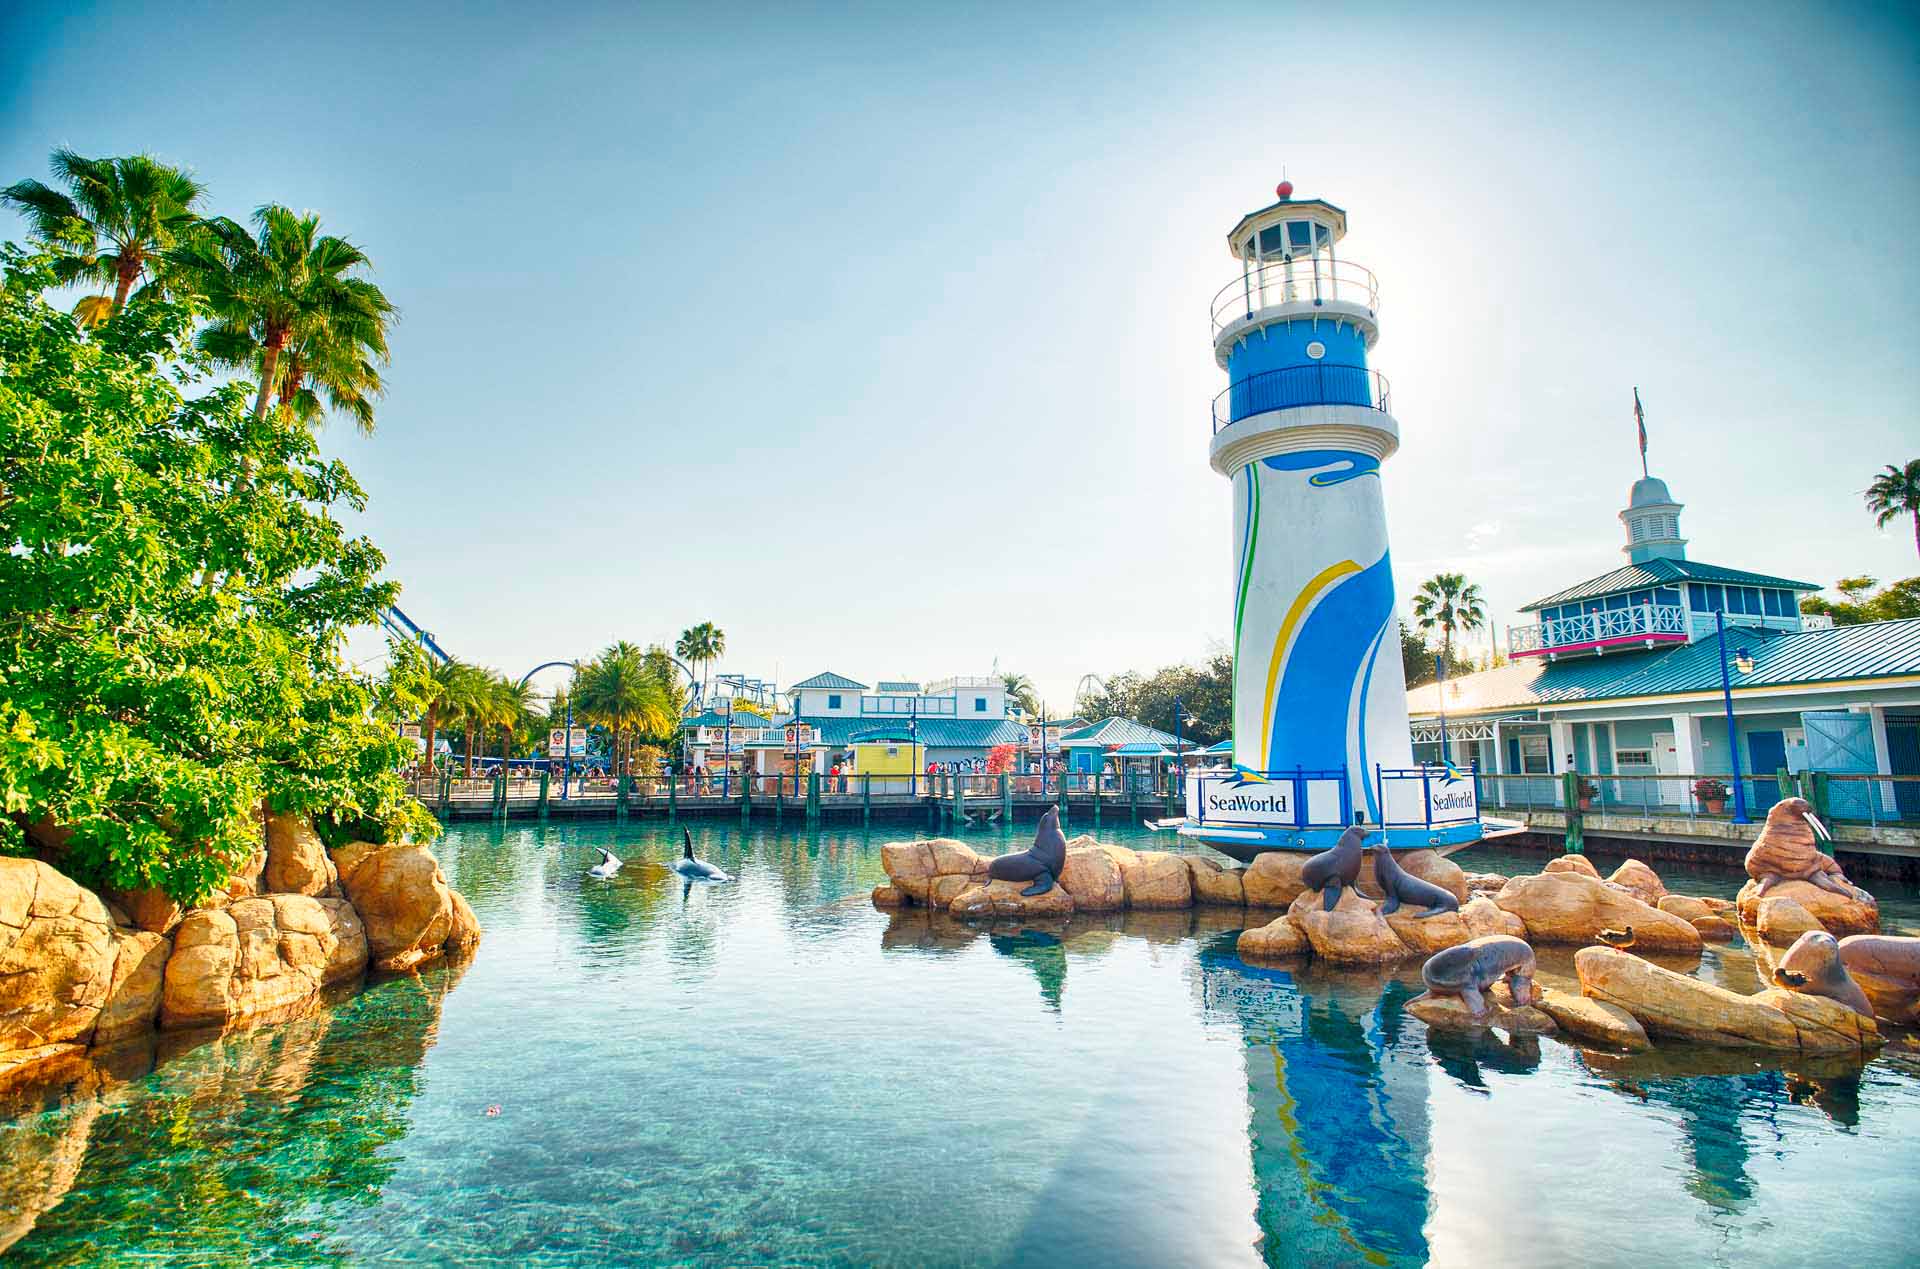 Der Leuchtturm von SeaWorld Orlando ist von einer Lagune umgeben